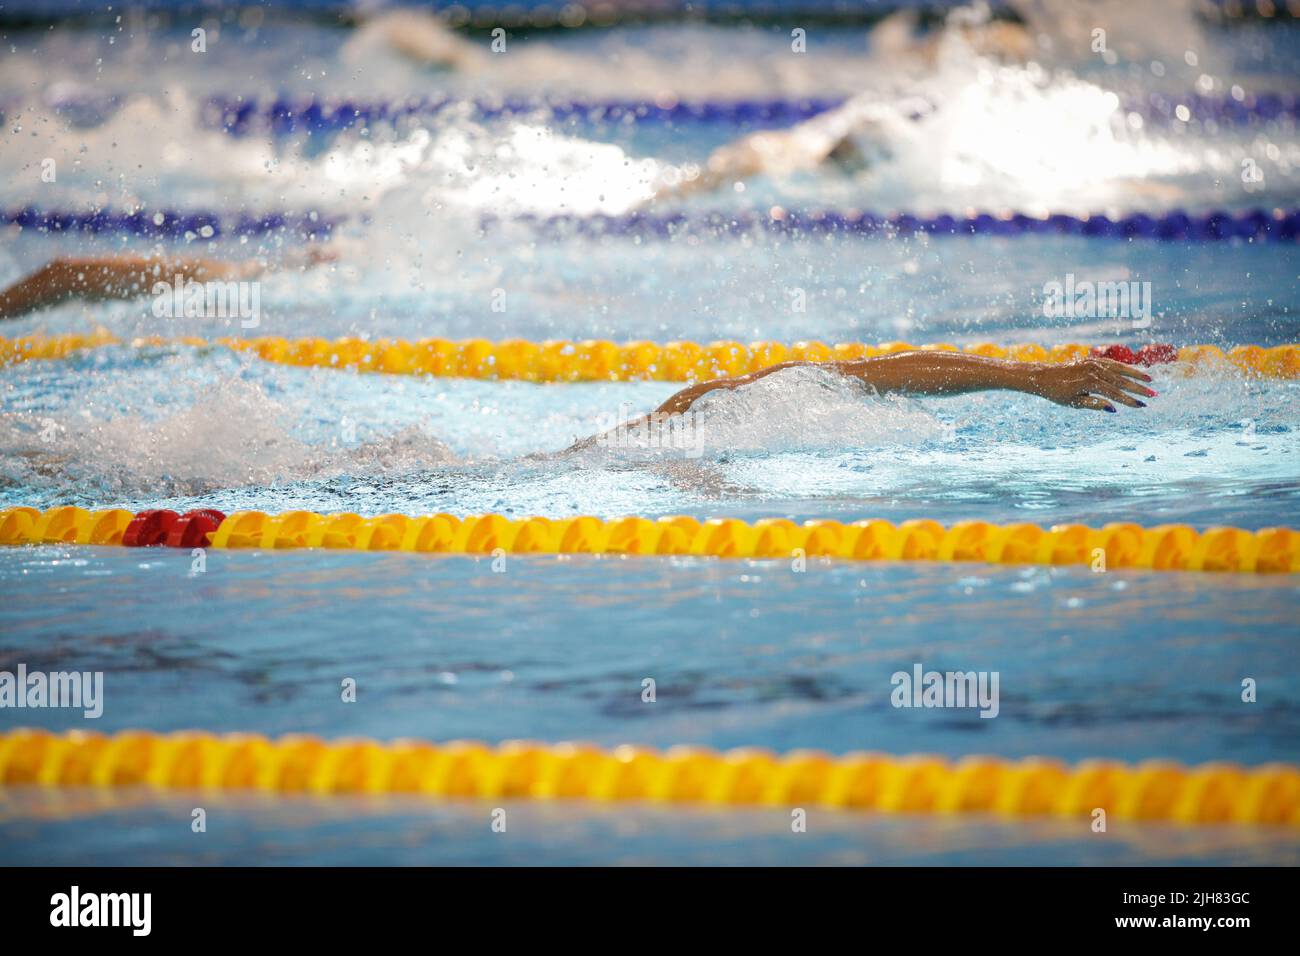 Dettagli con un atleta maschile professionista nuoto in una piscina olimpionica freestyle. Foto Stock